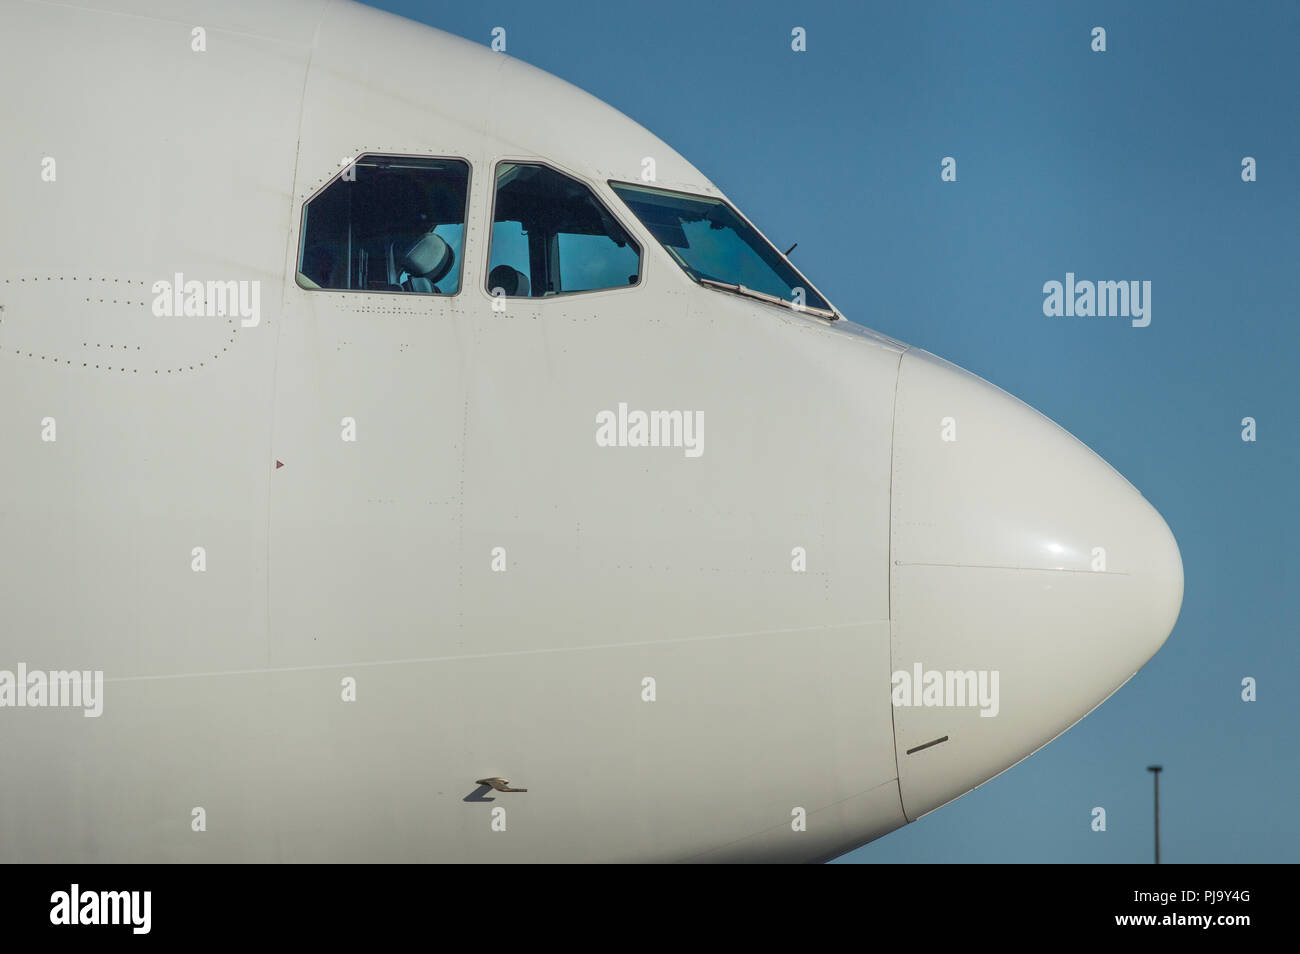 Thomas Cook aeromobili Airbus A330 visto all'Aeroporto Internazionale di Glasgow, Renfrewshire, Scozia - 10 Settembre 2017 Foto Stock